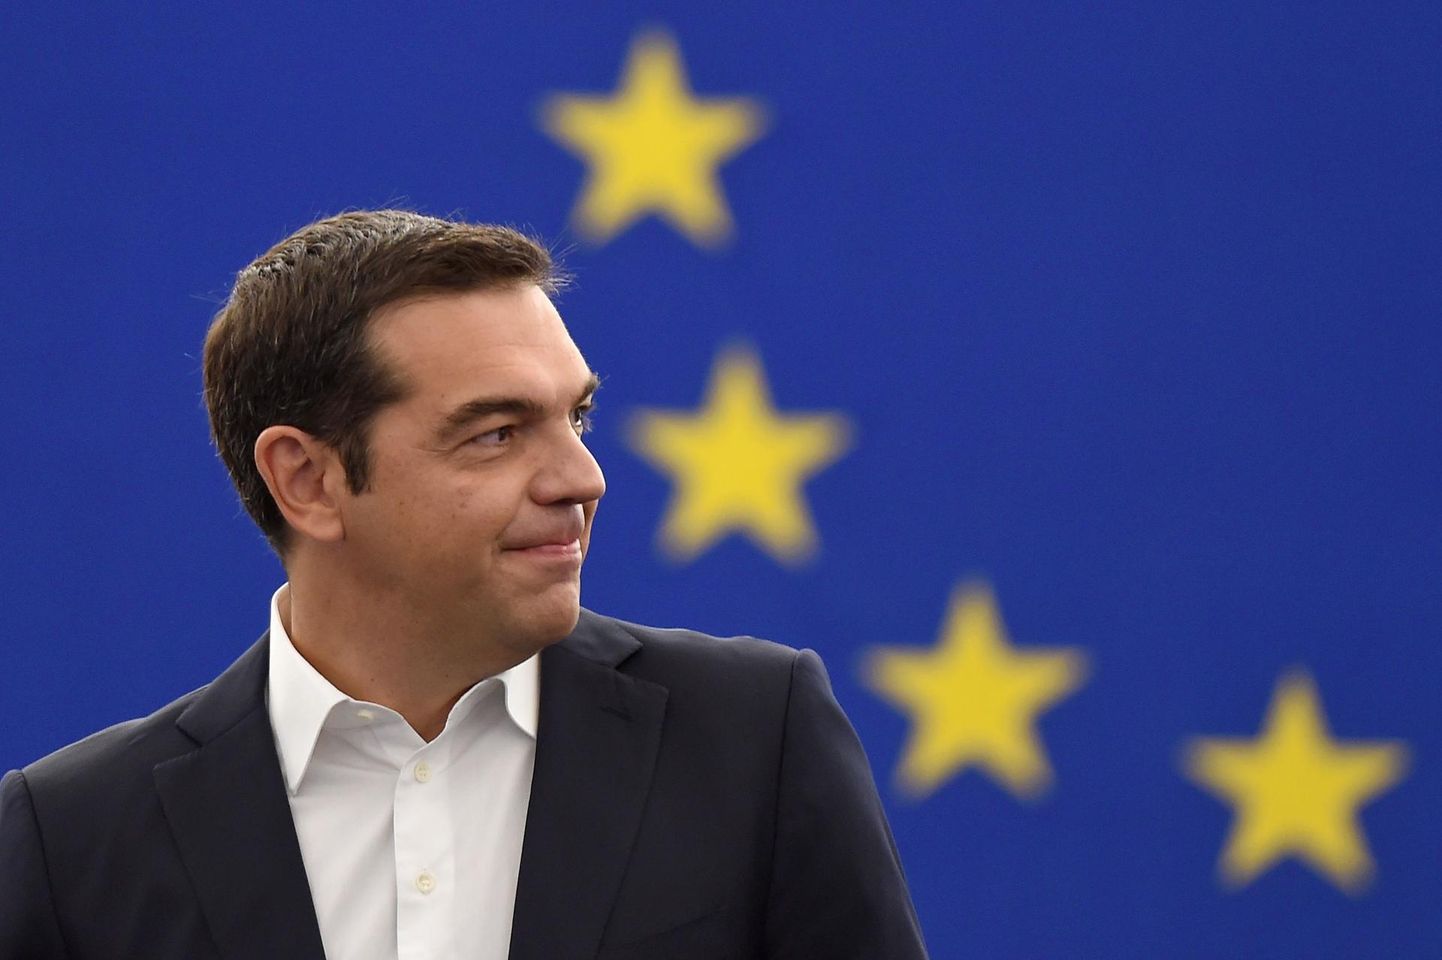 Kreeka peaminister Alexis Tsipras tõi eile Strasbourgis europarlamendi liikmete ees esinedes välja paralleeli neoliberalismi ja paremäärmuslaste vahel: mõlemad on tema jutu järgi Euroopale ohtlikud.